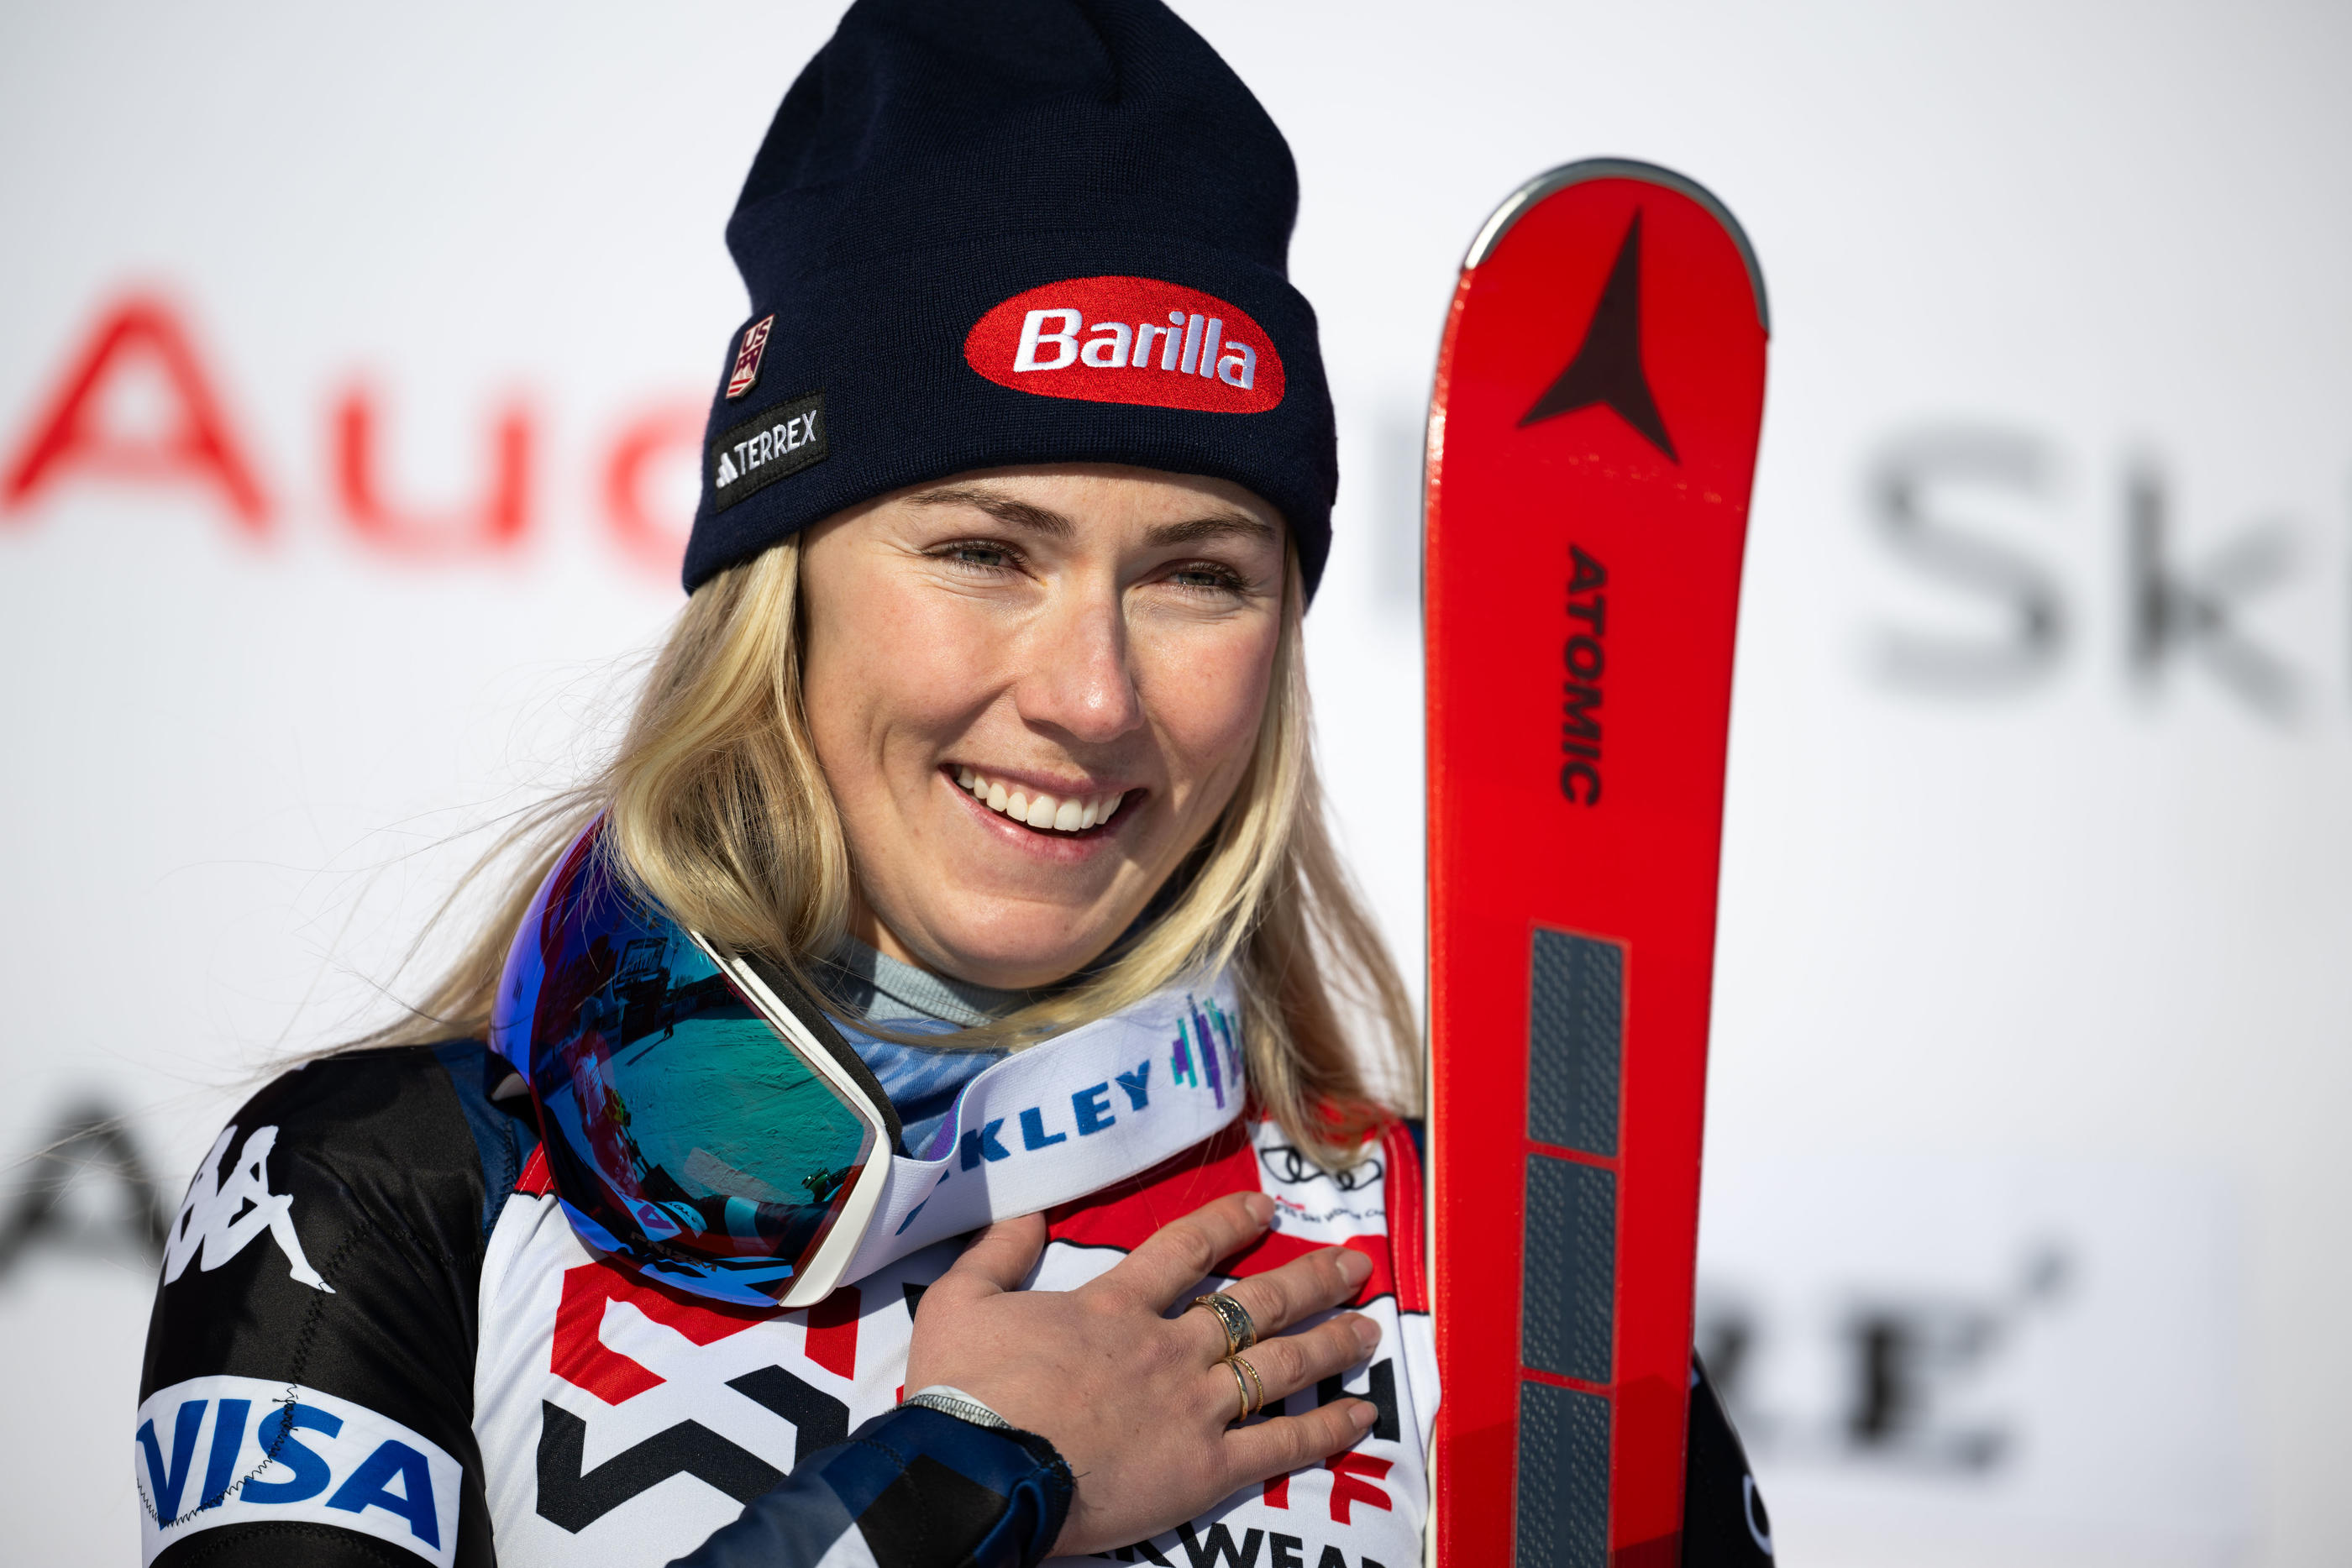 L'Américaine Mikaela Shiffrin, 28 ans, s'est imposée dans le slalom de Are ce dimanche et s'assure le globe de cristal de la spécialité, le 8e de sa carrière. Icon sport/Maxim Thore